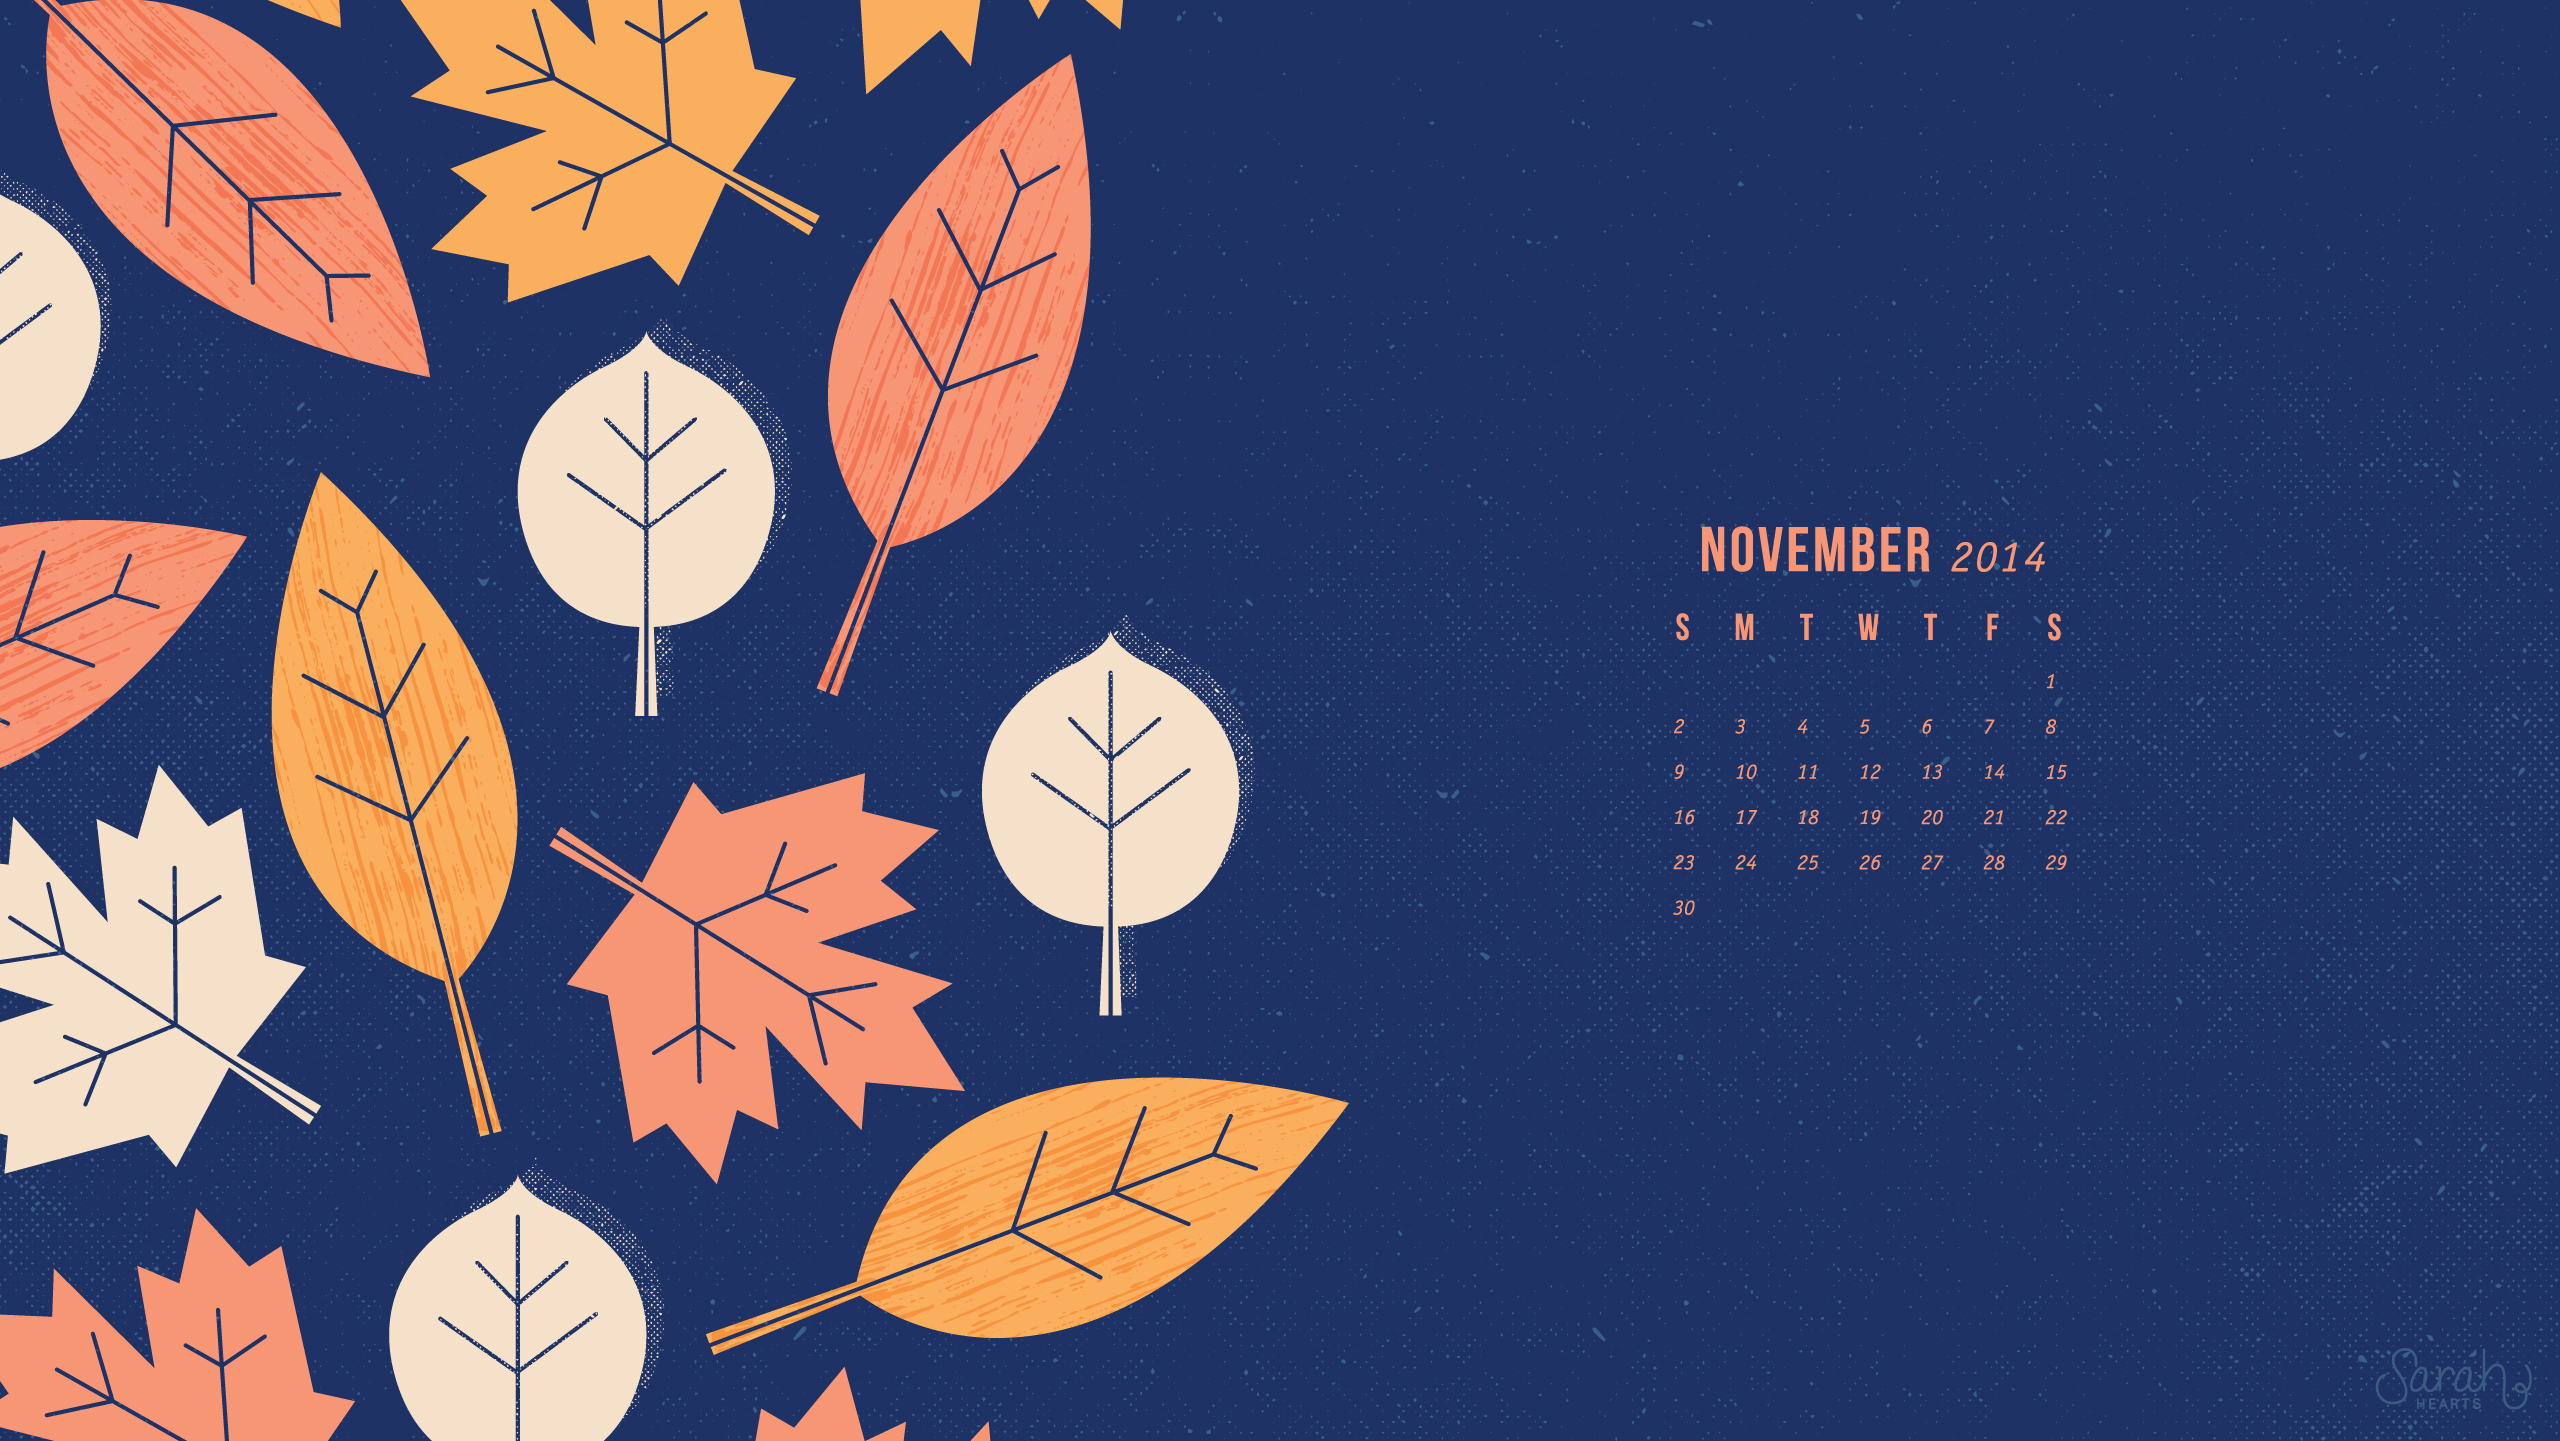 Tải về miễn phí Lịch tháng 11 năm 2015 với hình nền desktop tháng 11 đẹp nhất sẽ giúp cho bạn có một không gian làm việc mới lạ và độc đáo. Hãy tải ngay và thưởng thức những hình ảnh đẹp tinh tế.